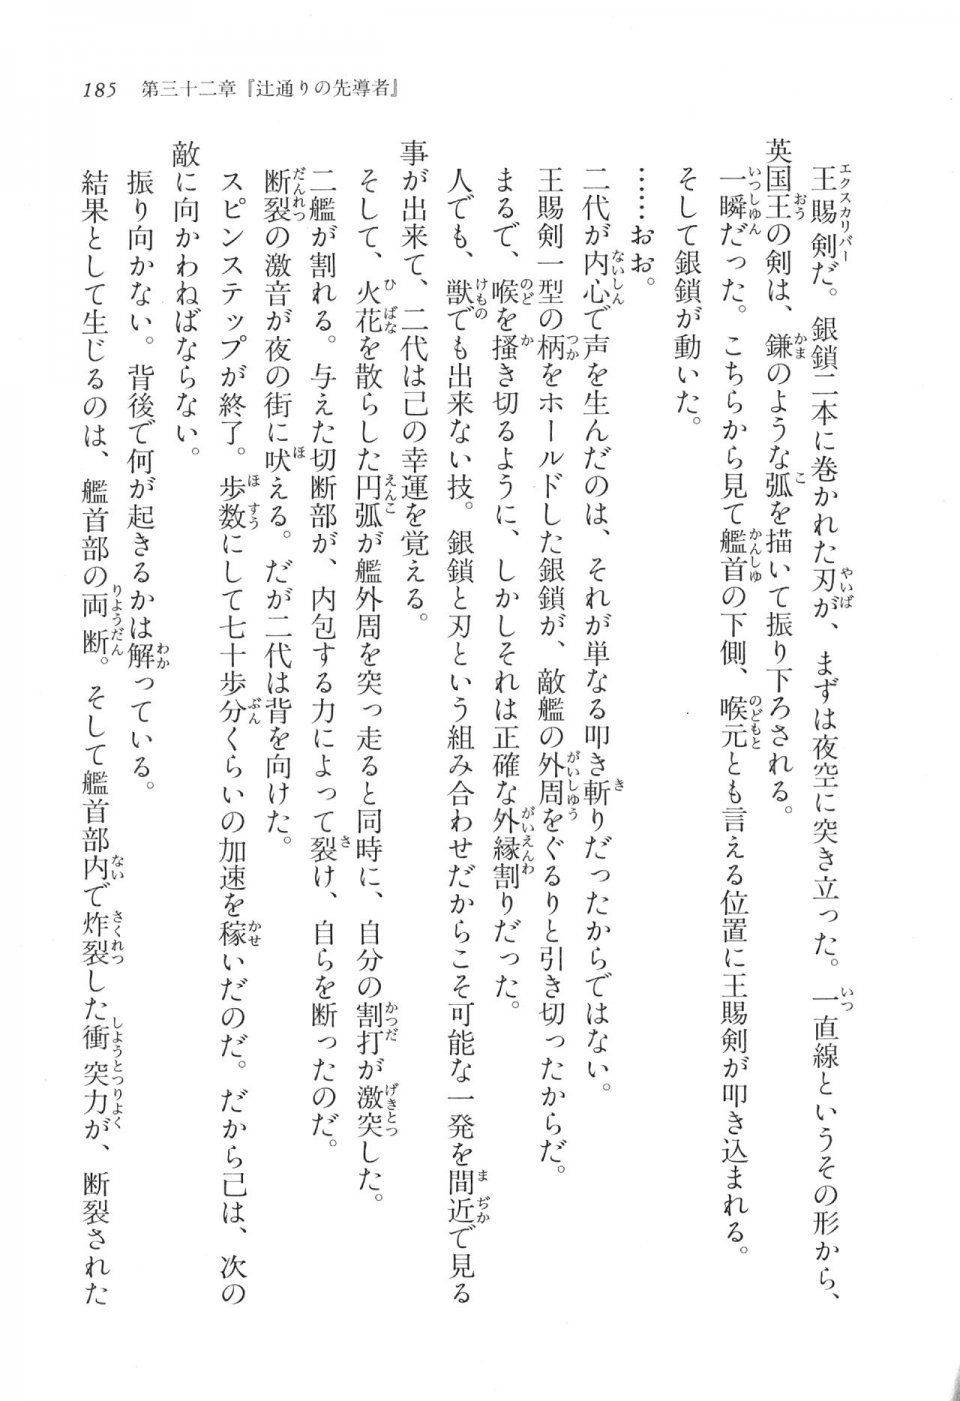 Kyoukai Senjou no Horizon LN Vol 17(7B) - Photo #185